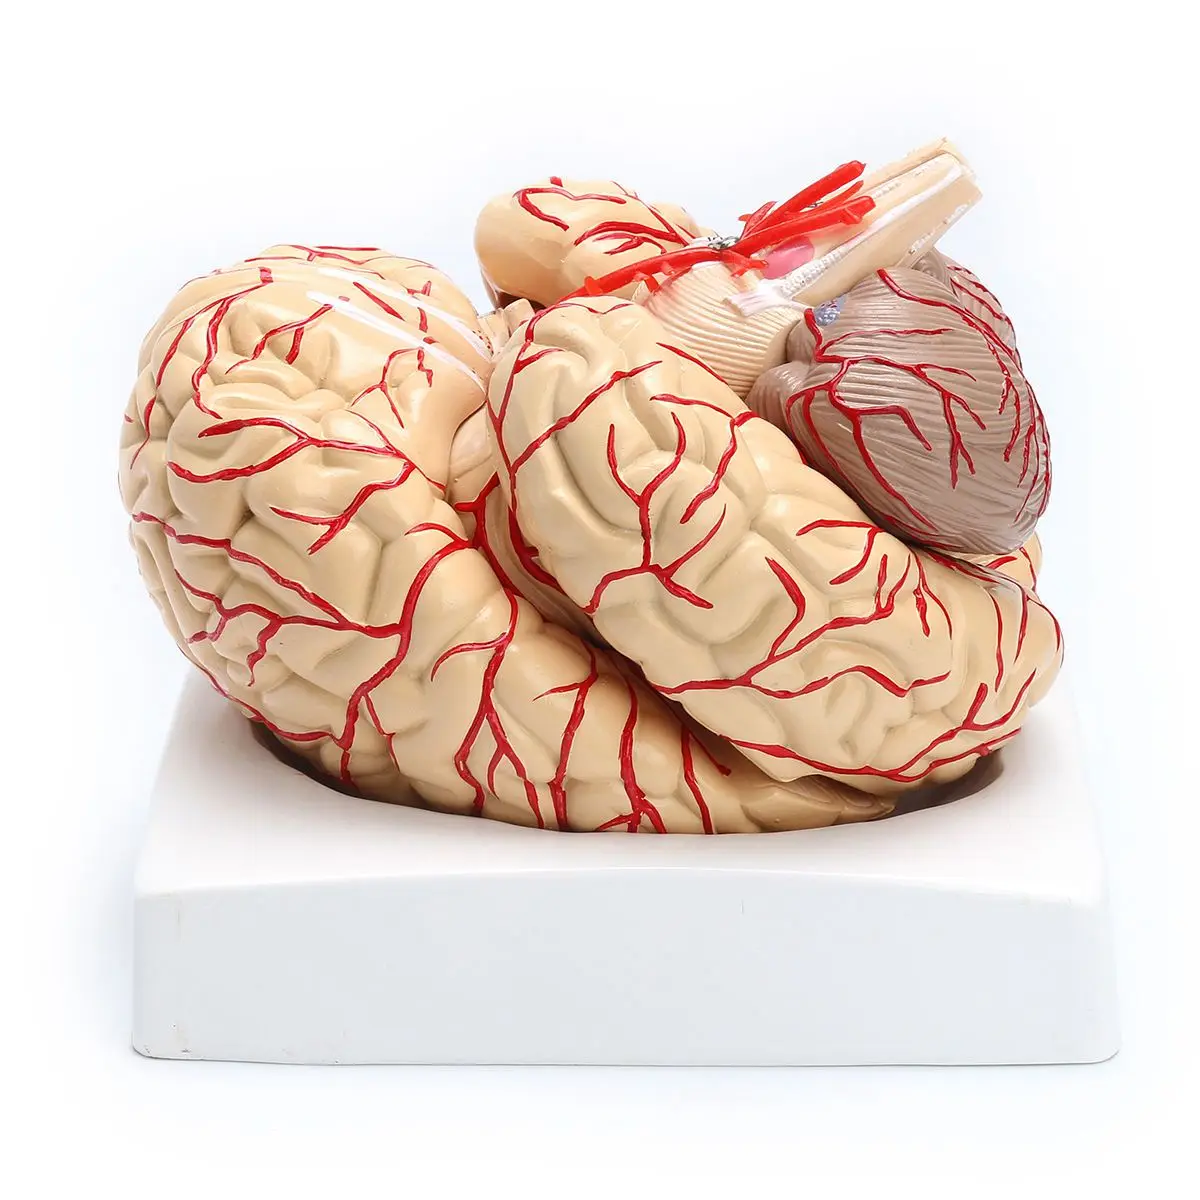 Горячая Распродажа 1: 1 жизнь Размеры анатомическая человек мозг Модель Pro рассечение медицинские Органы модель обучения